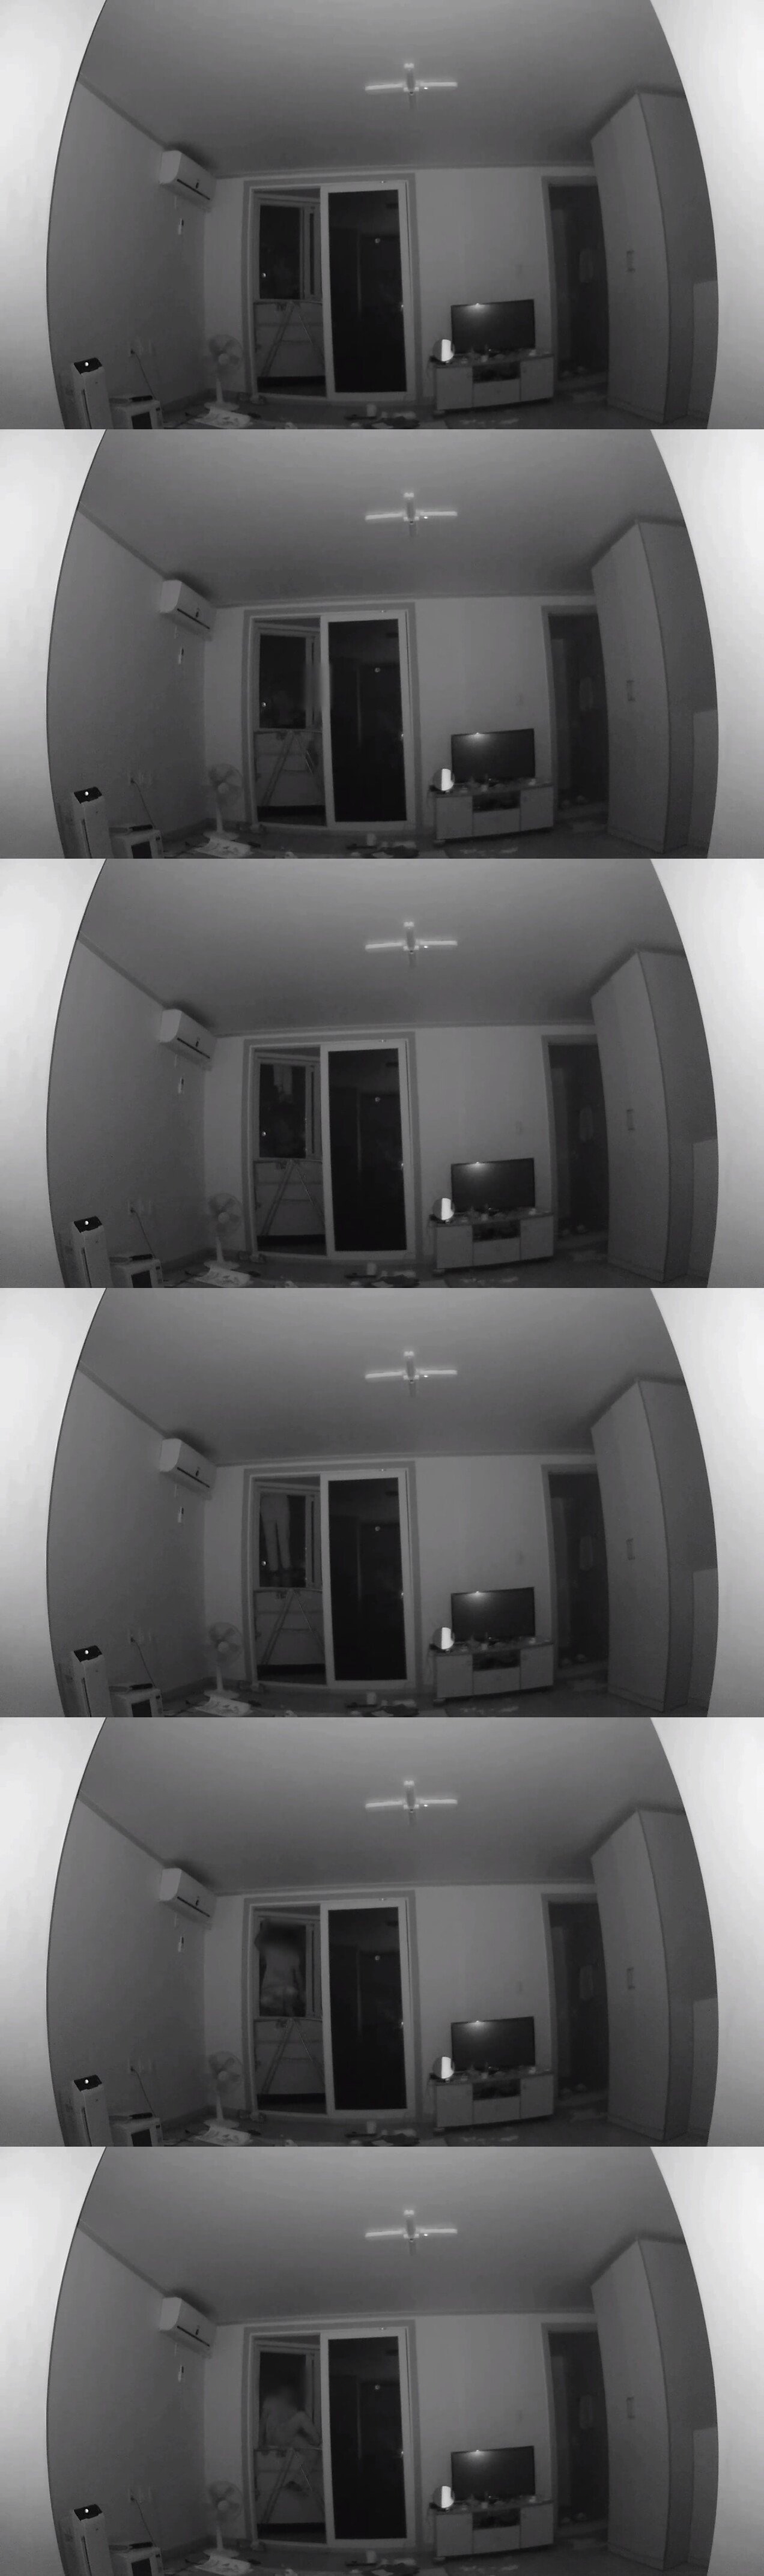 집안에 설치한 CCTV에 찍힌 것...1-vert.jpg